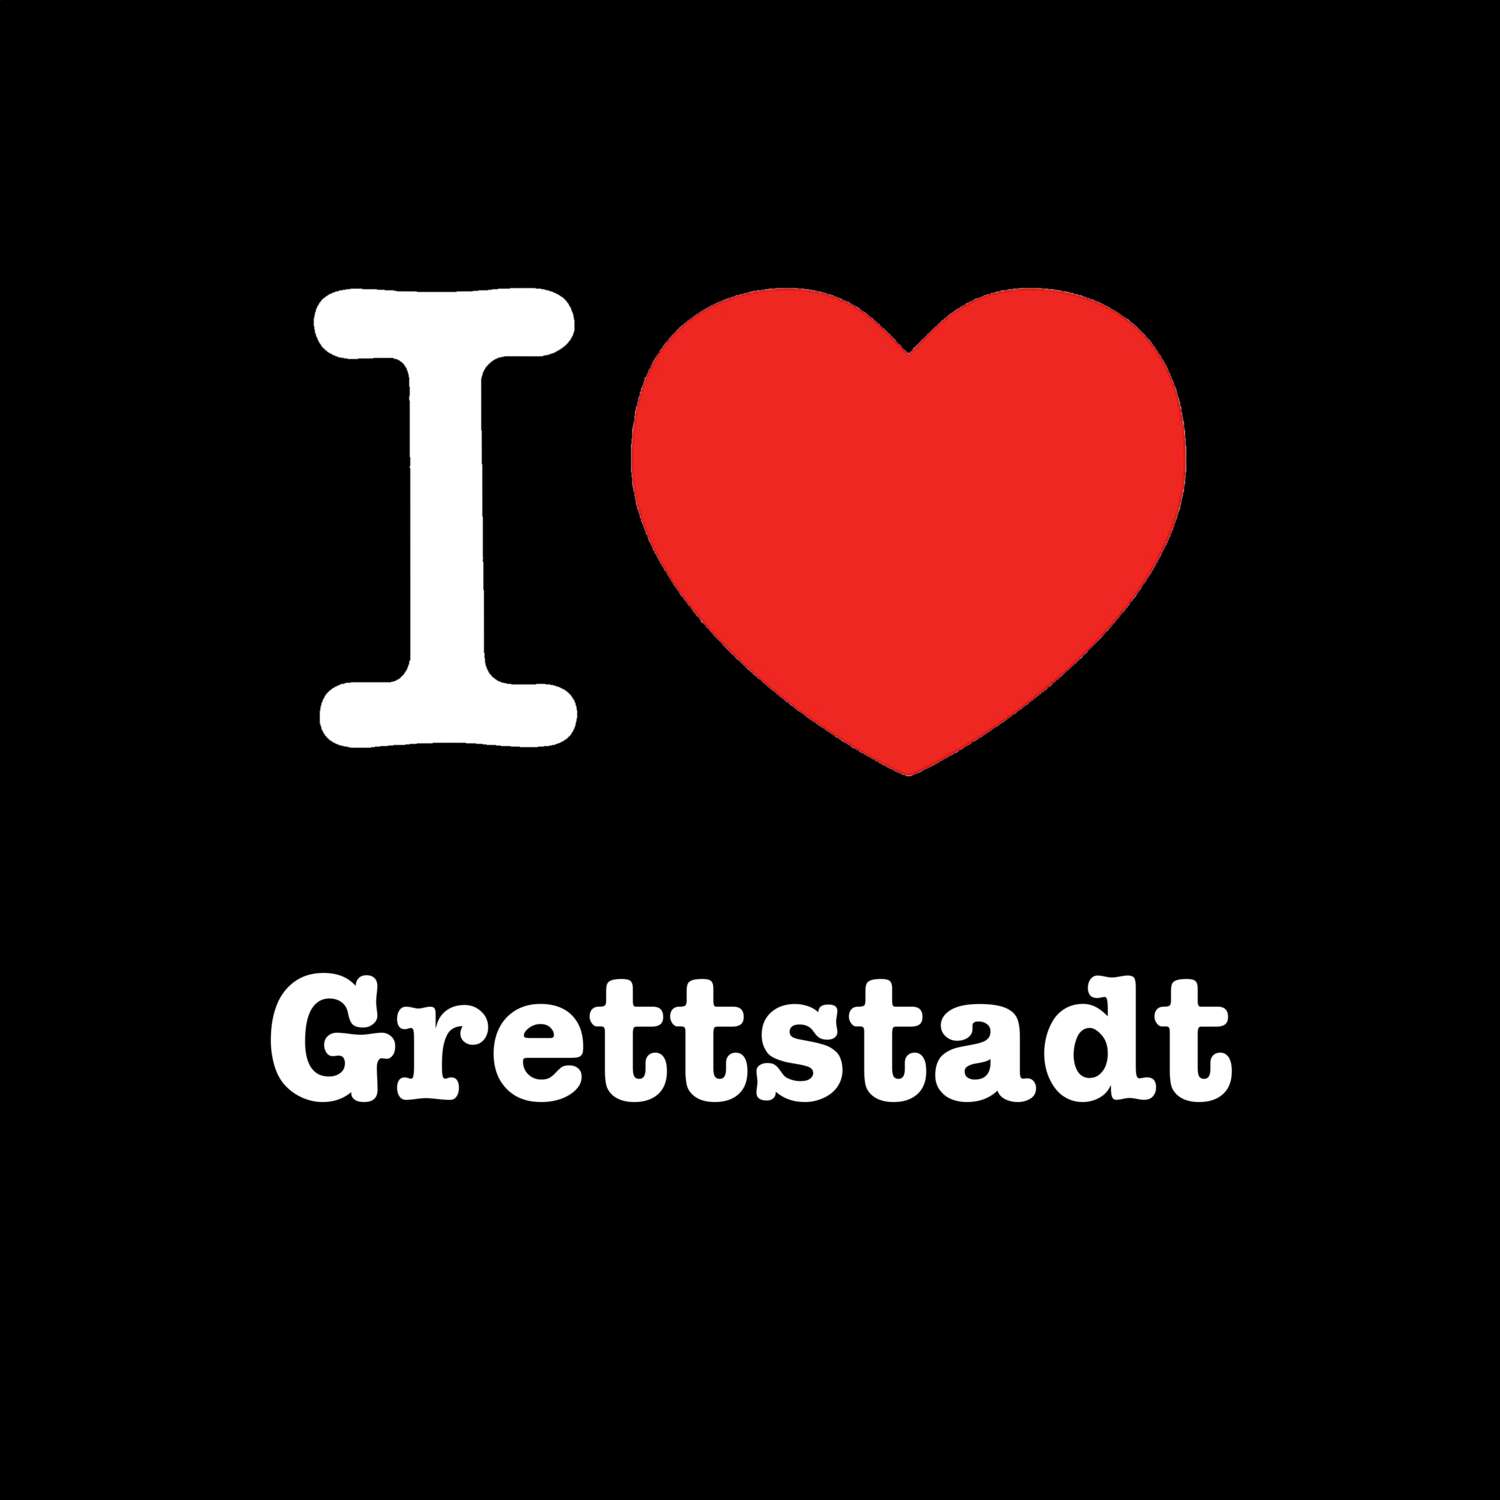 Grettstadt T-Shirt »I love«